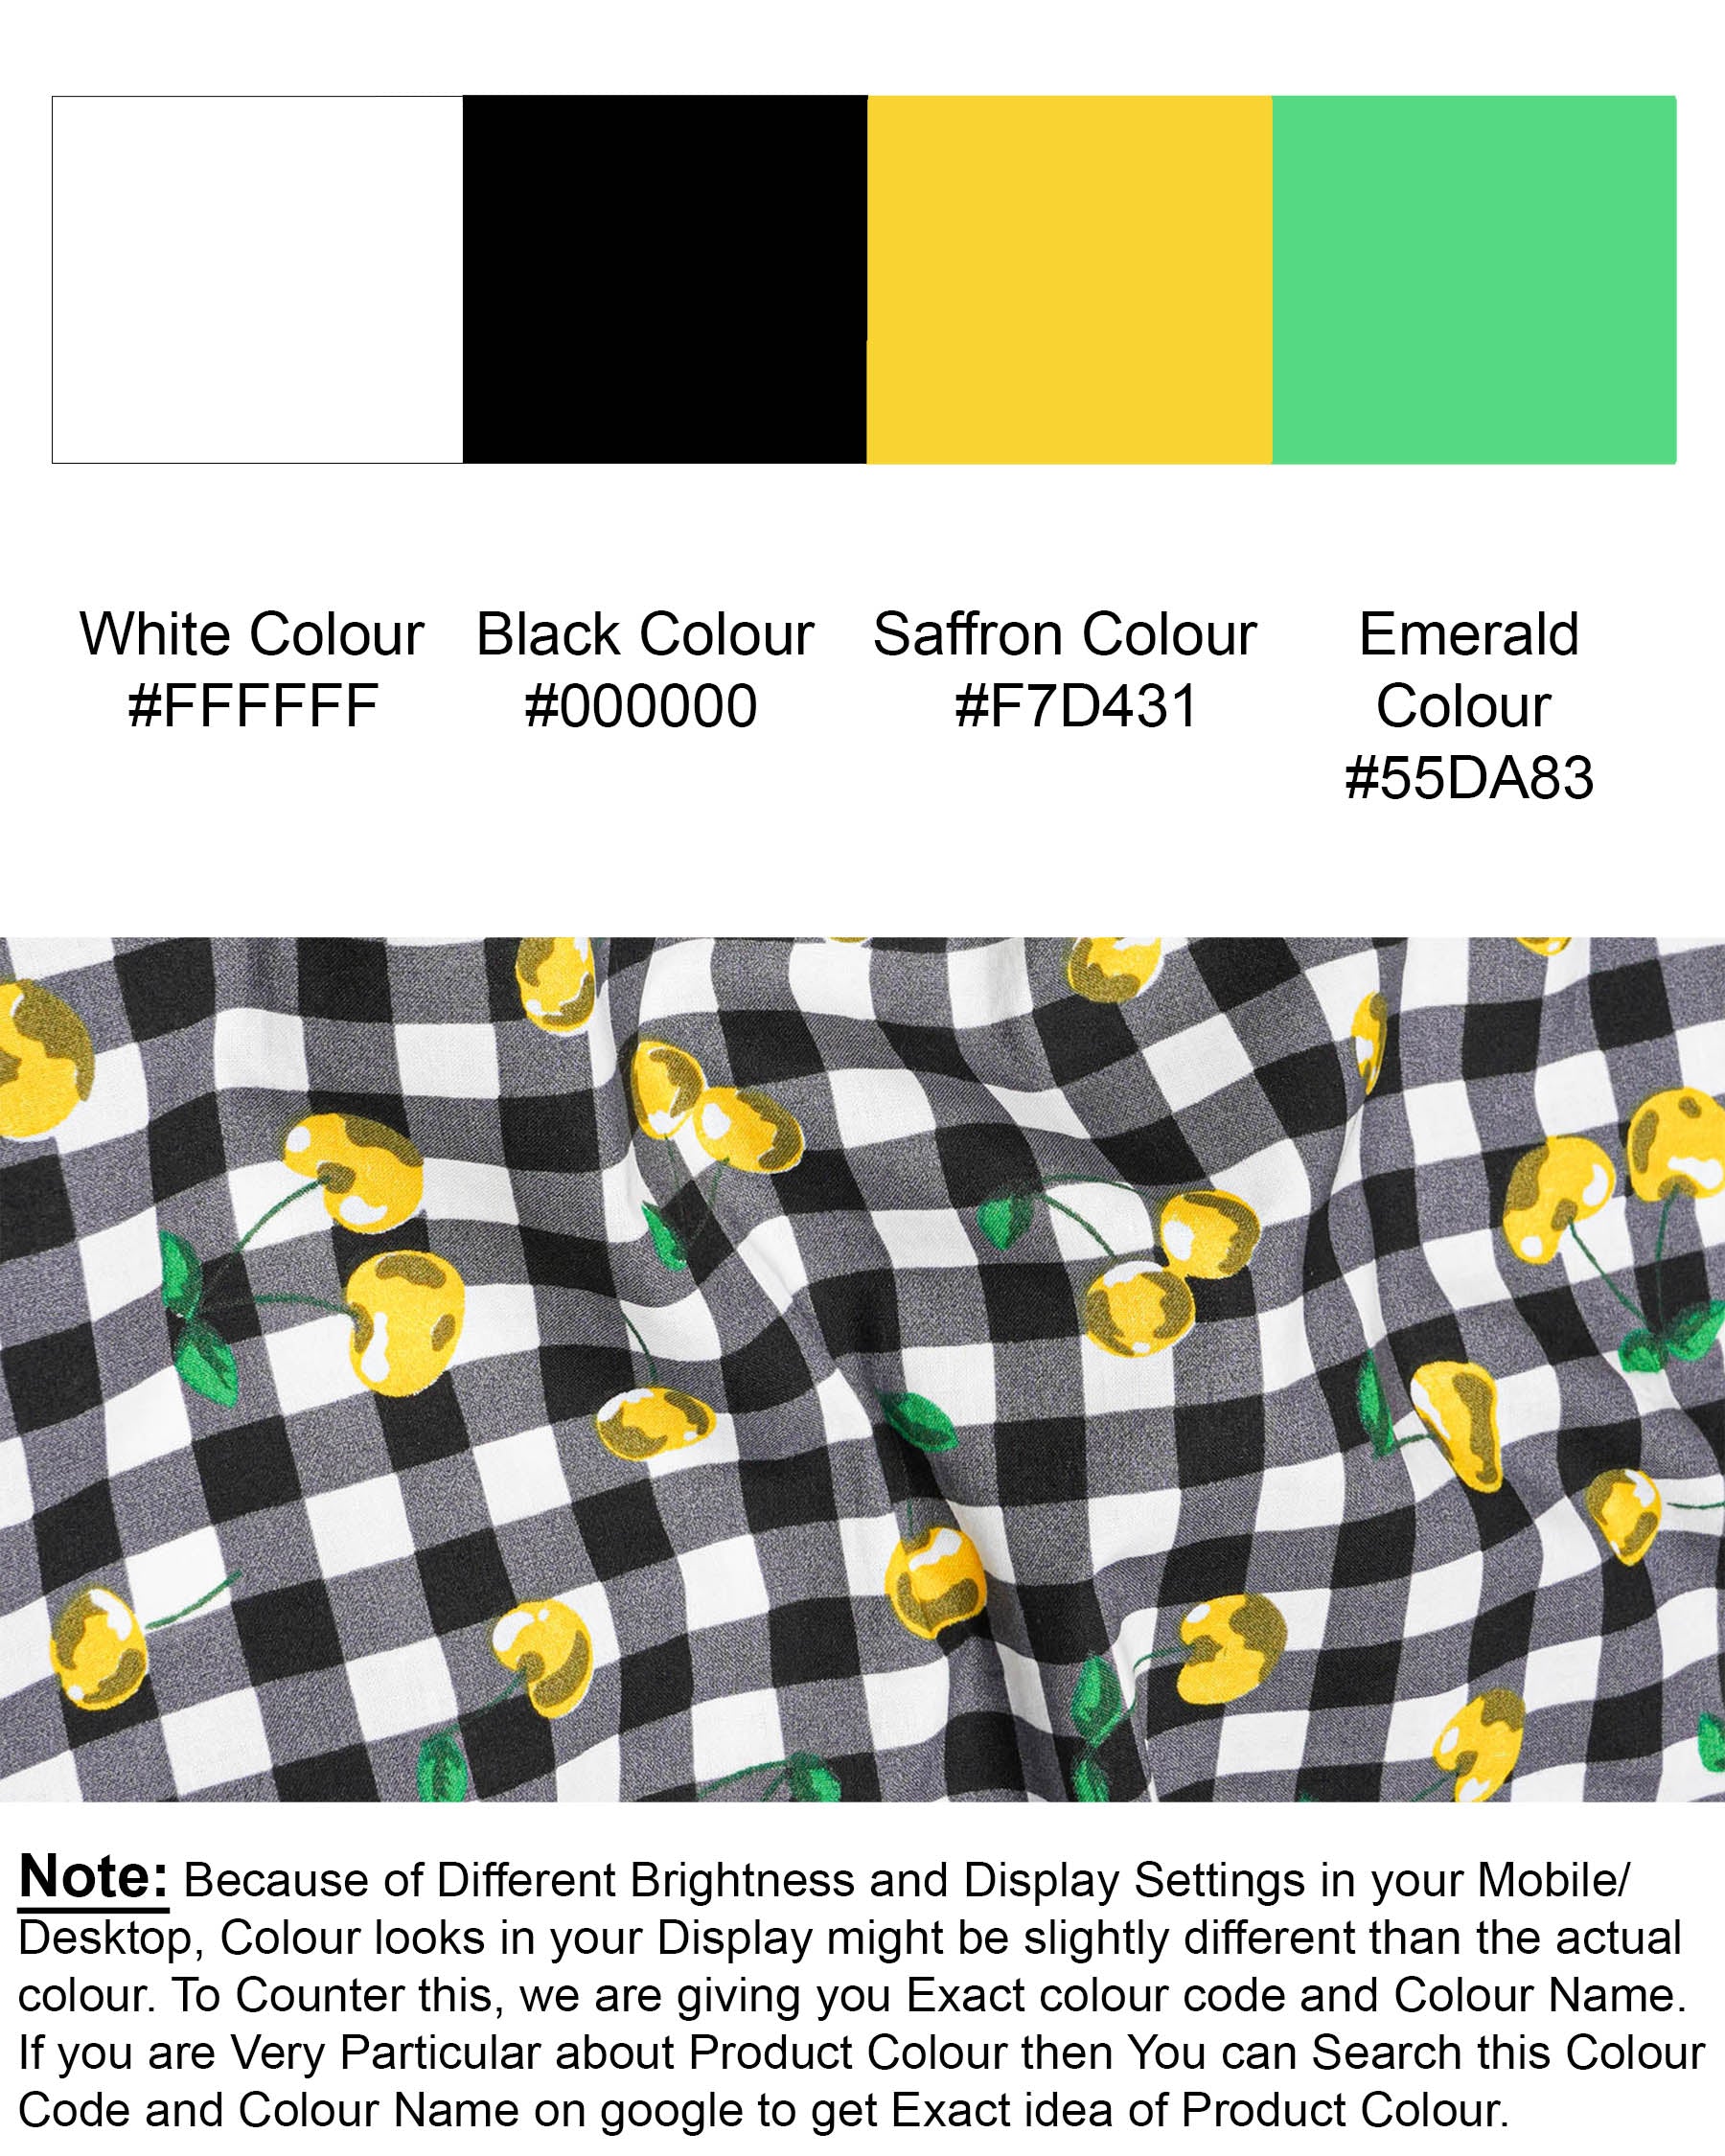 Jade Black and White Checked with yellow Cherries Printed Premium Cotton Shirt 7652-KS-38,7652-KS-38,7652-KS-39,7652-KS-39,7652-KS-40,7652-KS-40,7652-KS-42,7652-KS-42,7652-KS-44,7652-KS-44,7652-KS-46,7652-KS-46,7652-KS-48,7652-KS-48,7652-KS-50,7652-KS-50,7652-KS-52,7652-KS-52